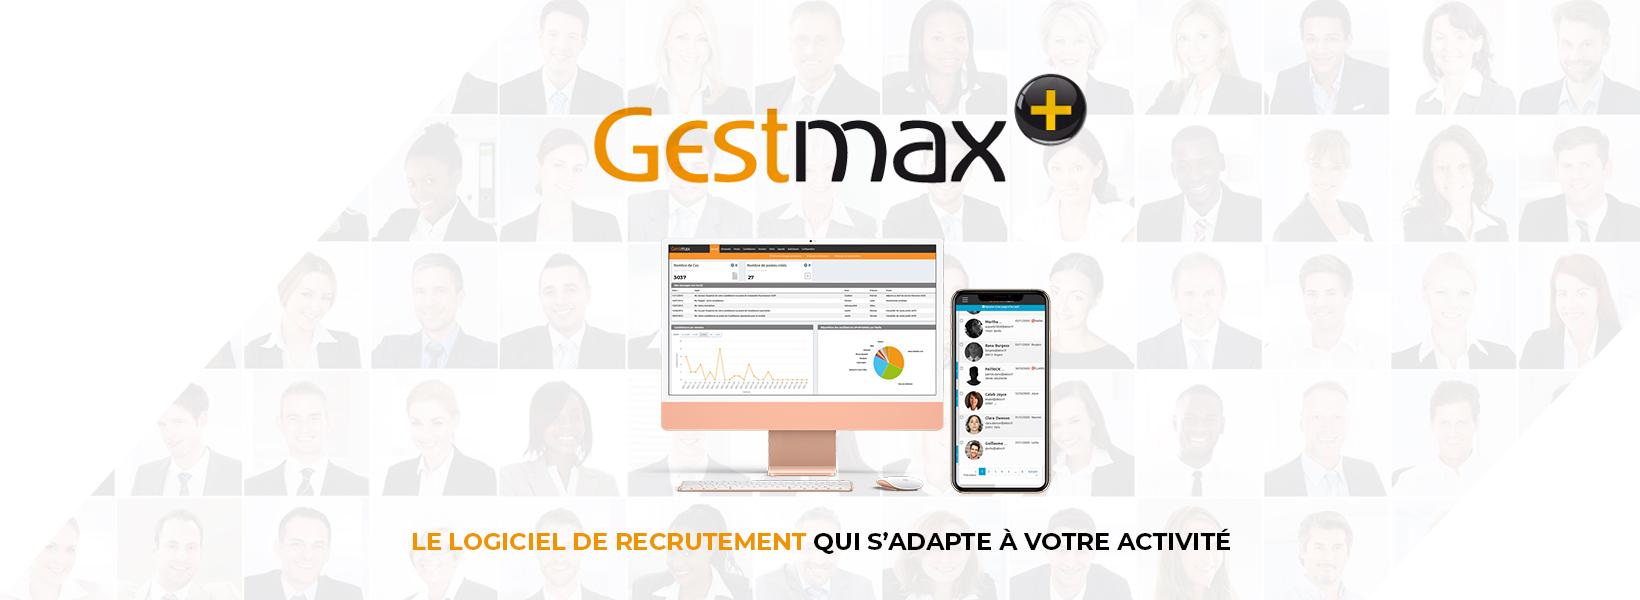 Avis Gestmax : L'ATS de recrutement innovant et 100% personnalisable - Appvizer